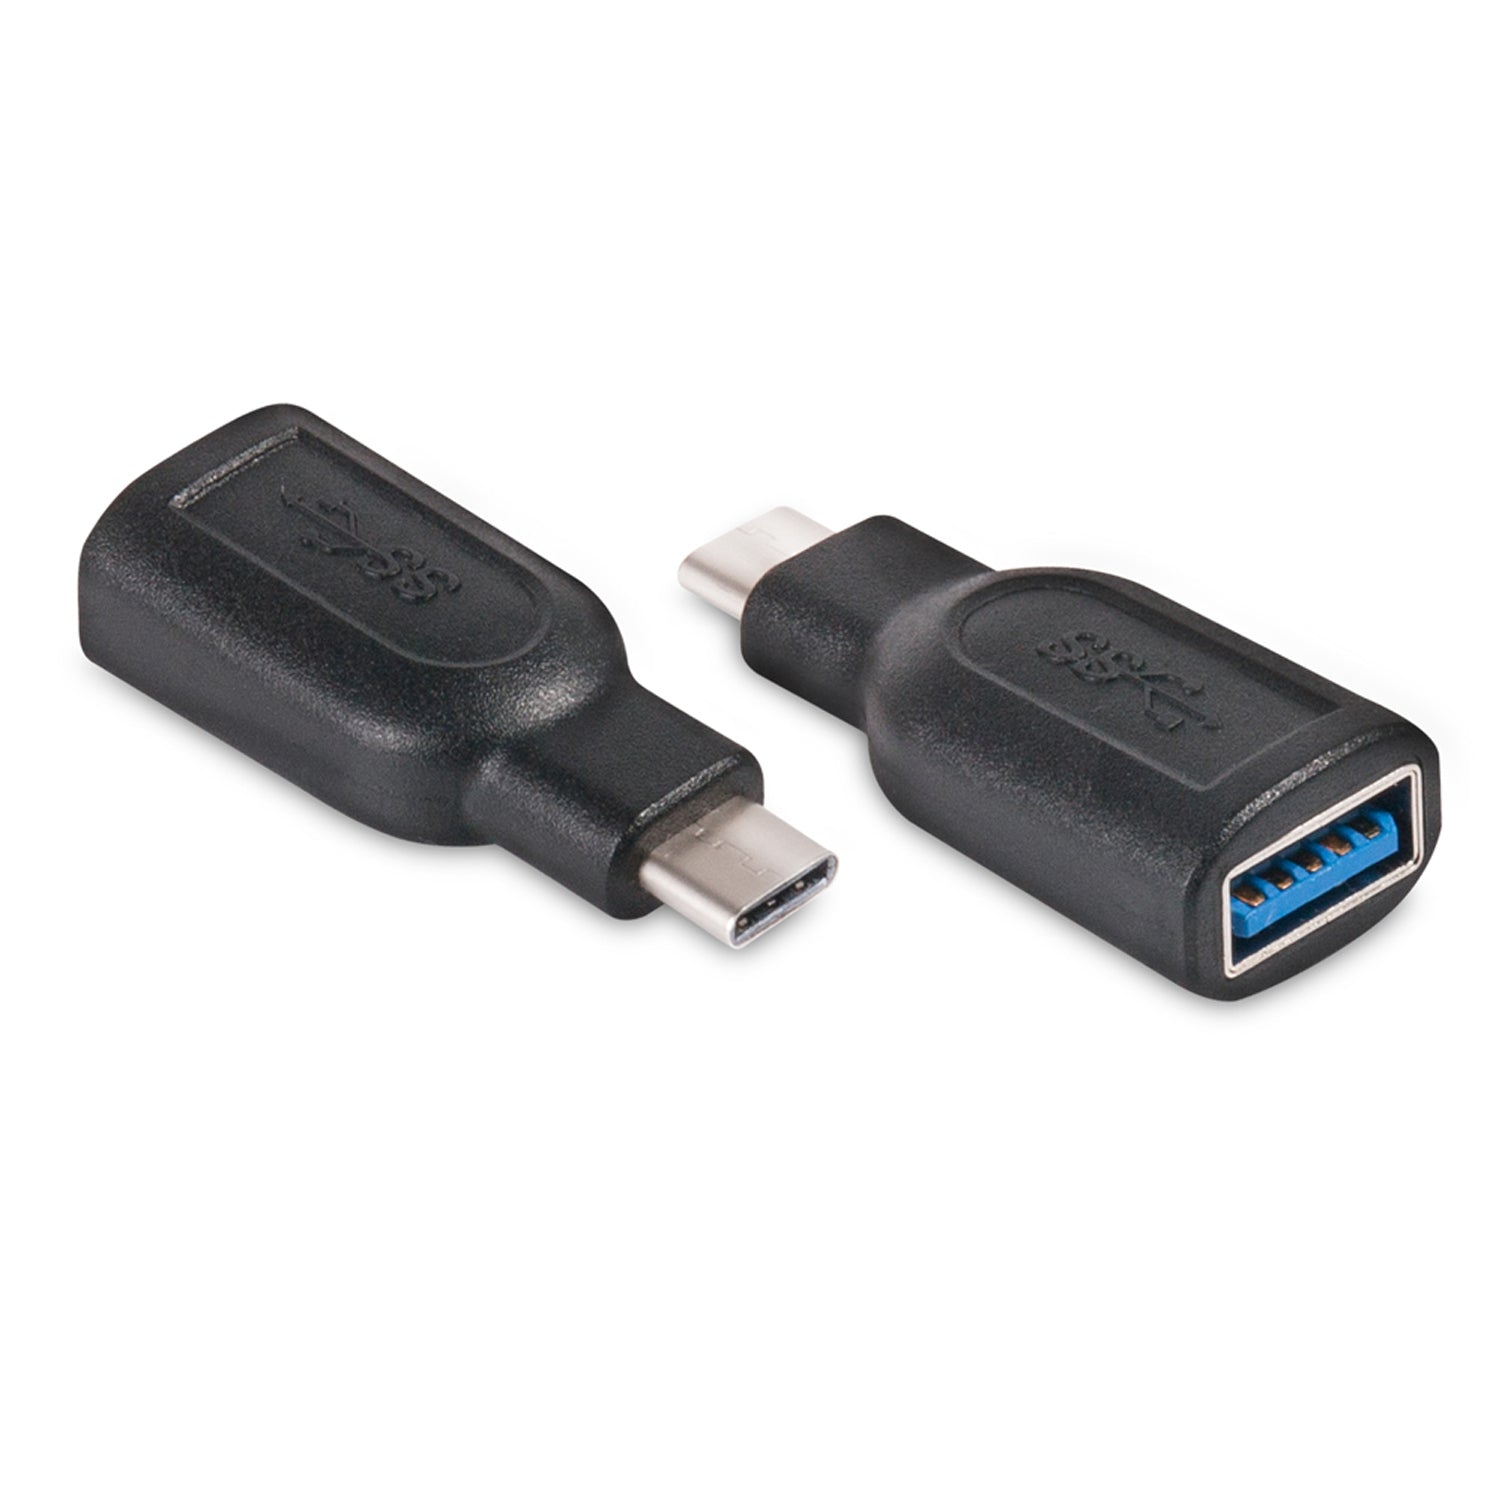 Club3D USB-C 3.1 Gen 1 Male to USB 3.1 Gen 1 Female adapter